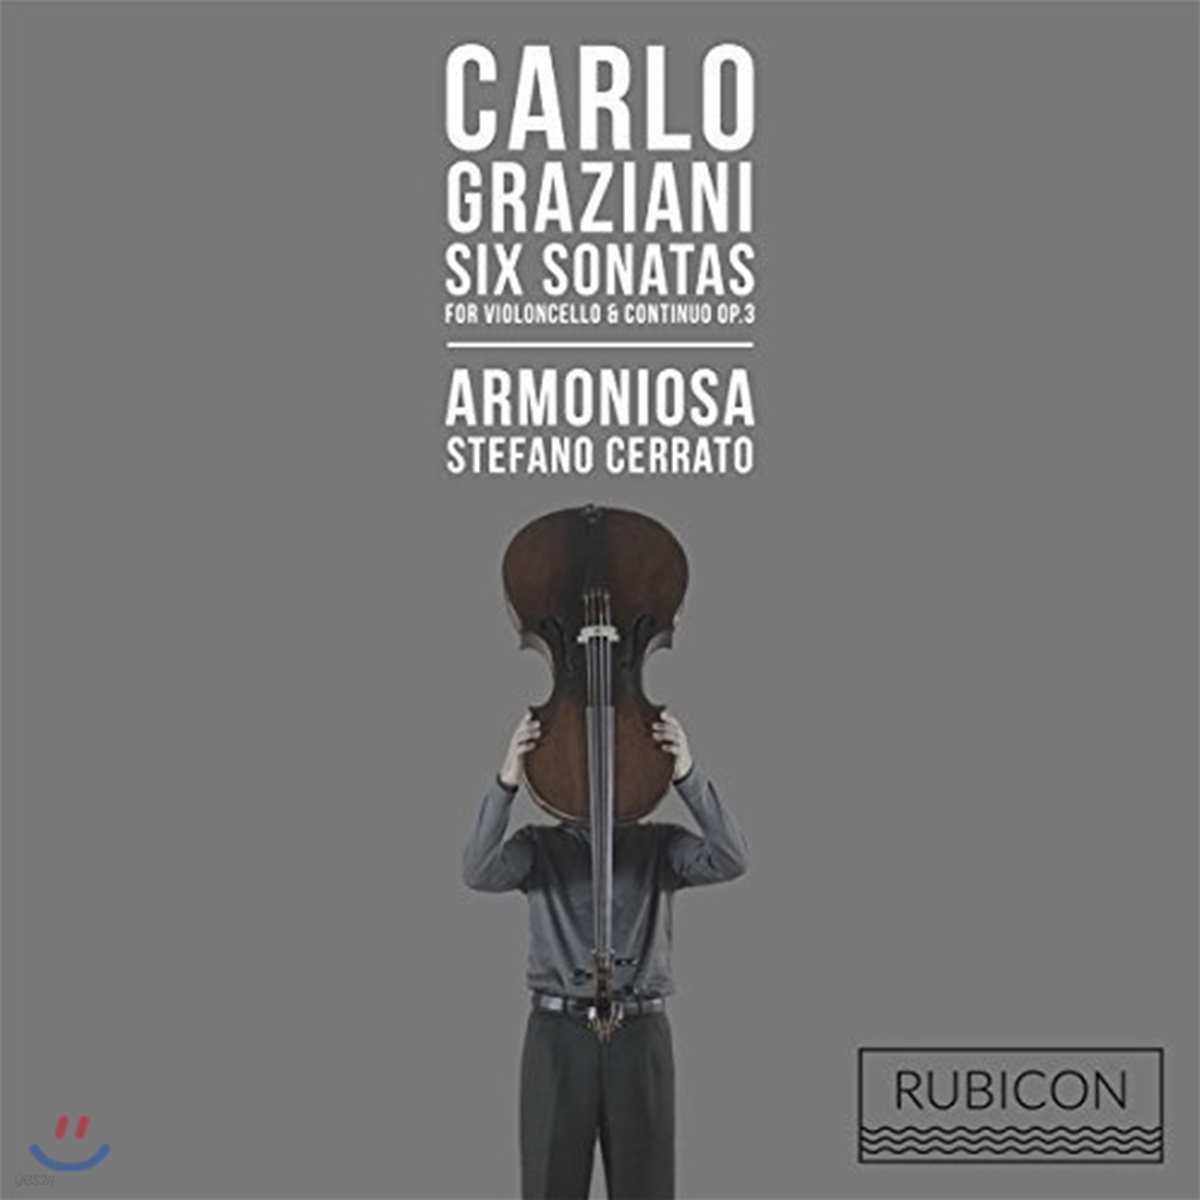 Stefano Cerrato 그라치아니: 첼로와 통주저음을 위한 6개의 소나타 (Carlo Graziani: Six Sonatas for Violoncello & Continuo Op.3)